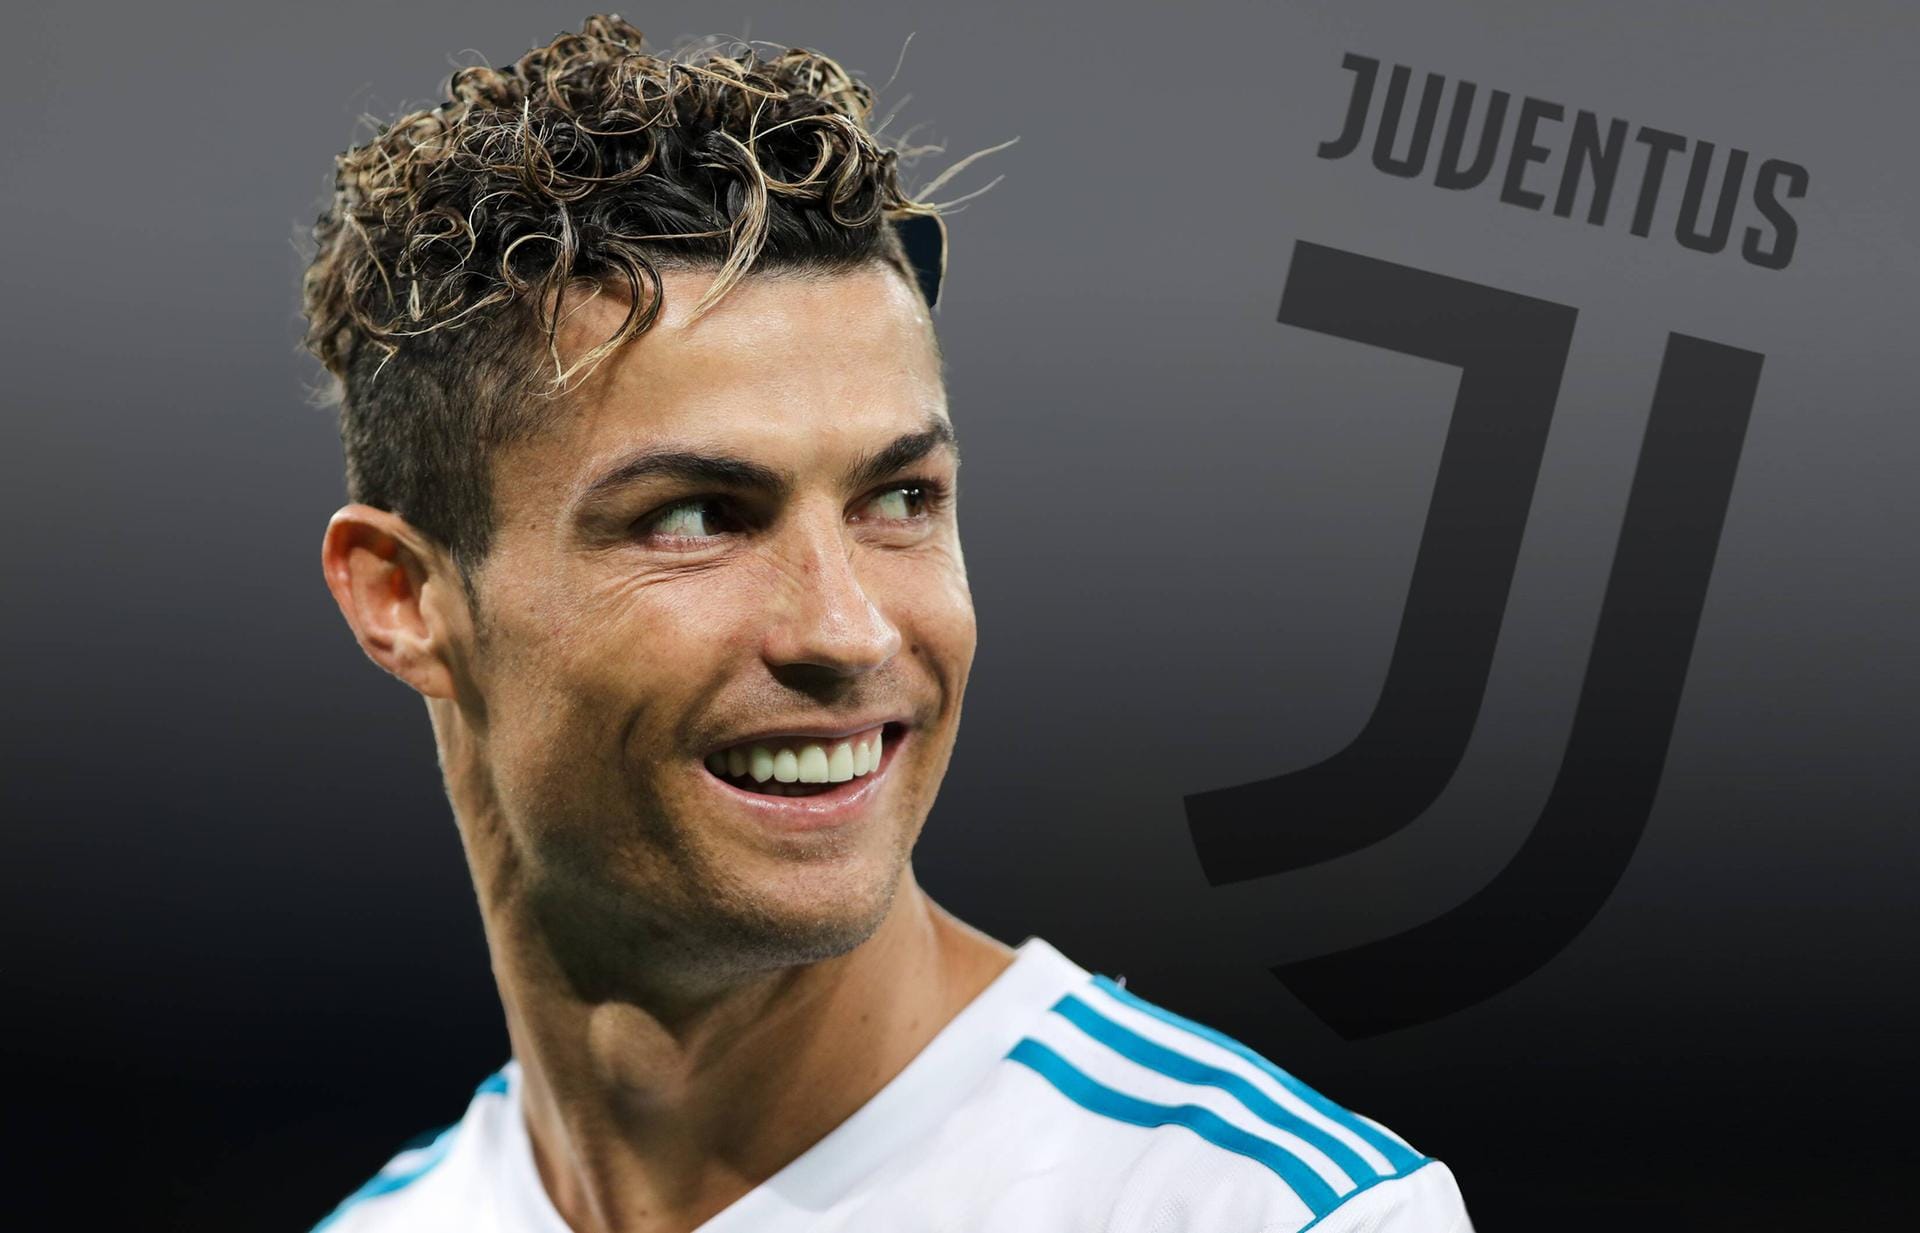 10. Platz: Cristiano Ronaldo, der nach neun Jahren von Real Madrid zu Juventus Turin gewechselt ist, hat in den vergangenen zwölf Monaten 108 Millionen Dollar (rund 92 Millionen Euro) eingenommen.